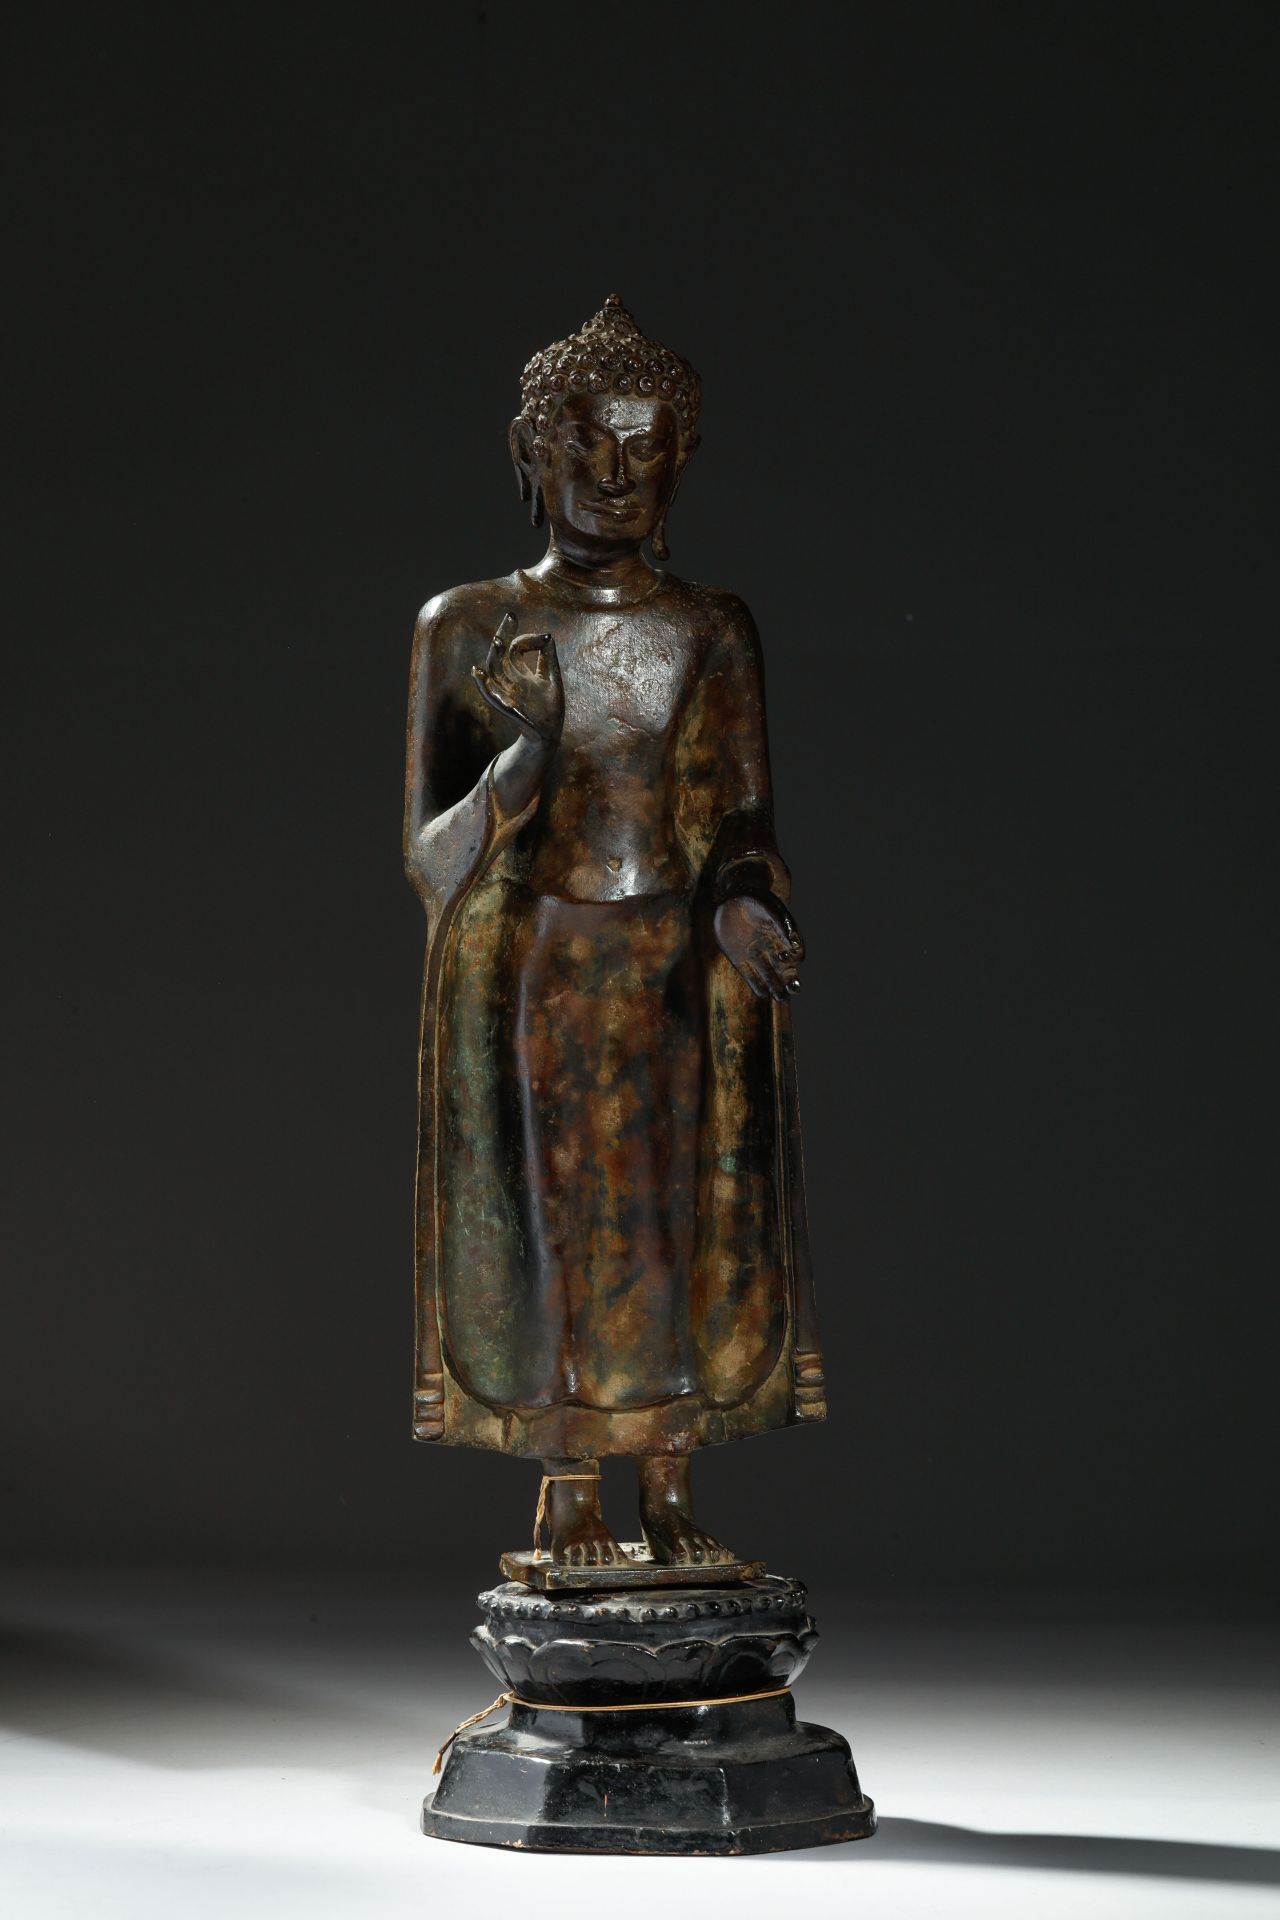 Buddha debout en posture hiératique, sur une base lotiforme , vêtu d’une robe monastique «